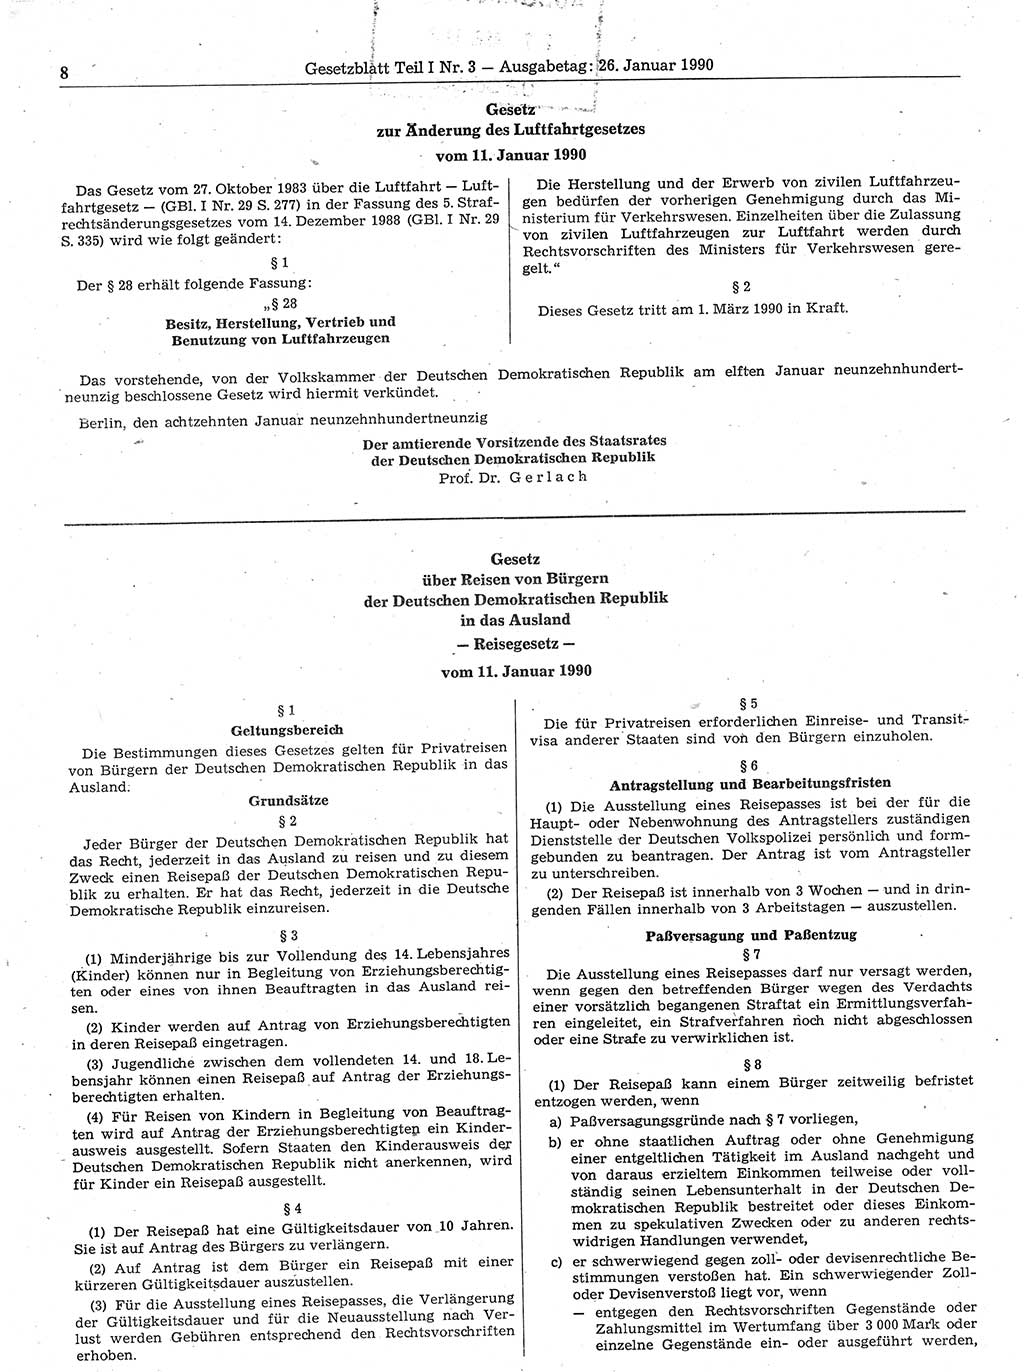 Gesetzblatt (GBl.) der Deutschen Demokratischen Republik (DDR) Teil Ⅰ 1990, Seite 8 (GBl. DDR Ⅰ 1990, S. 8)